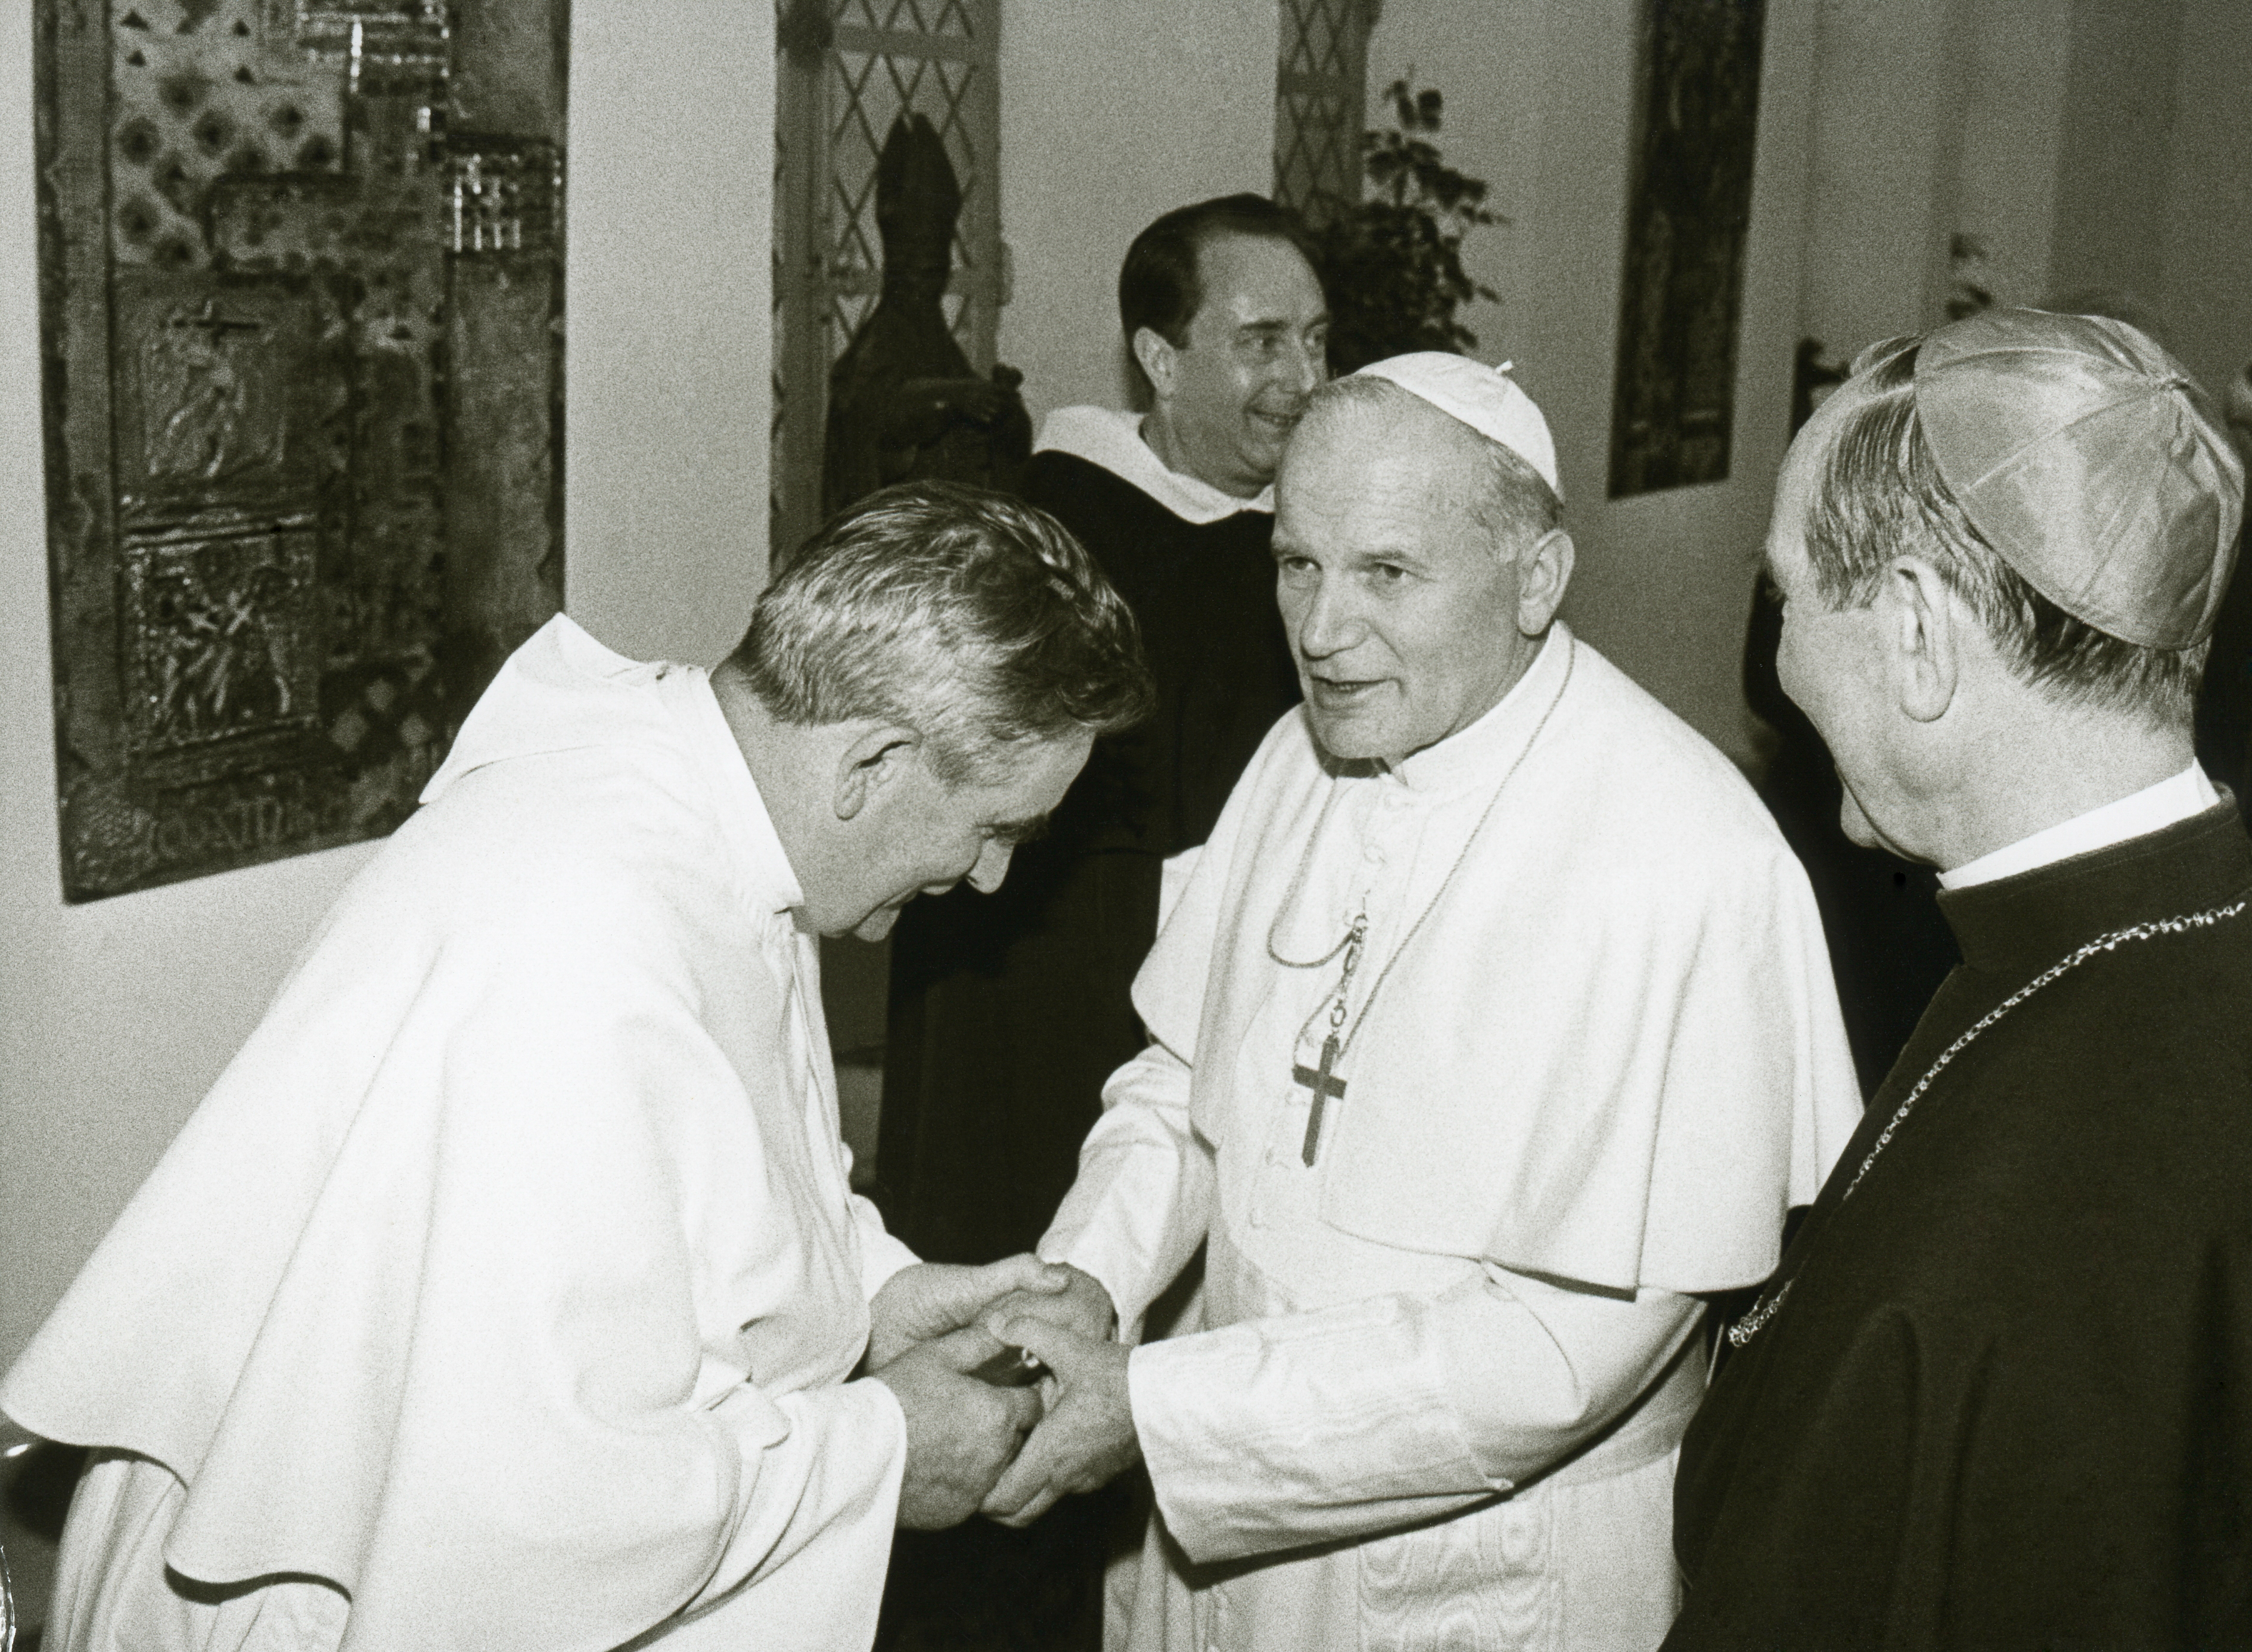 Centenario del nacimiento de San Juan Pablo II- ACN da continuidad a su legado hasta el día de hoy